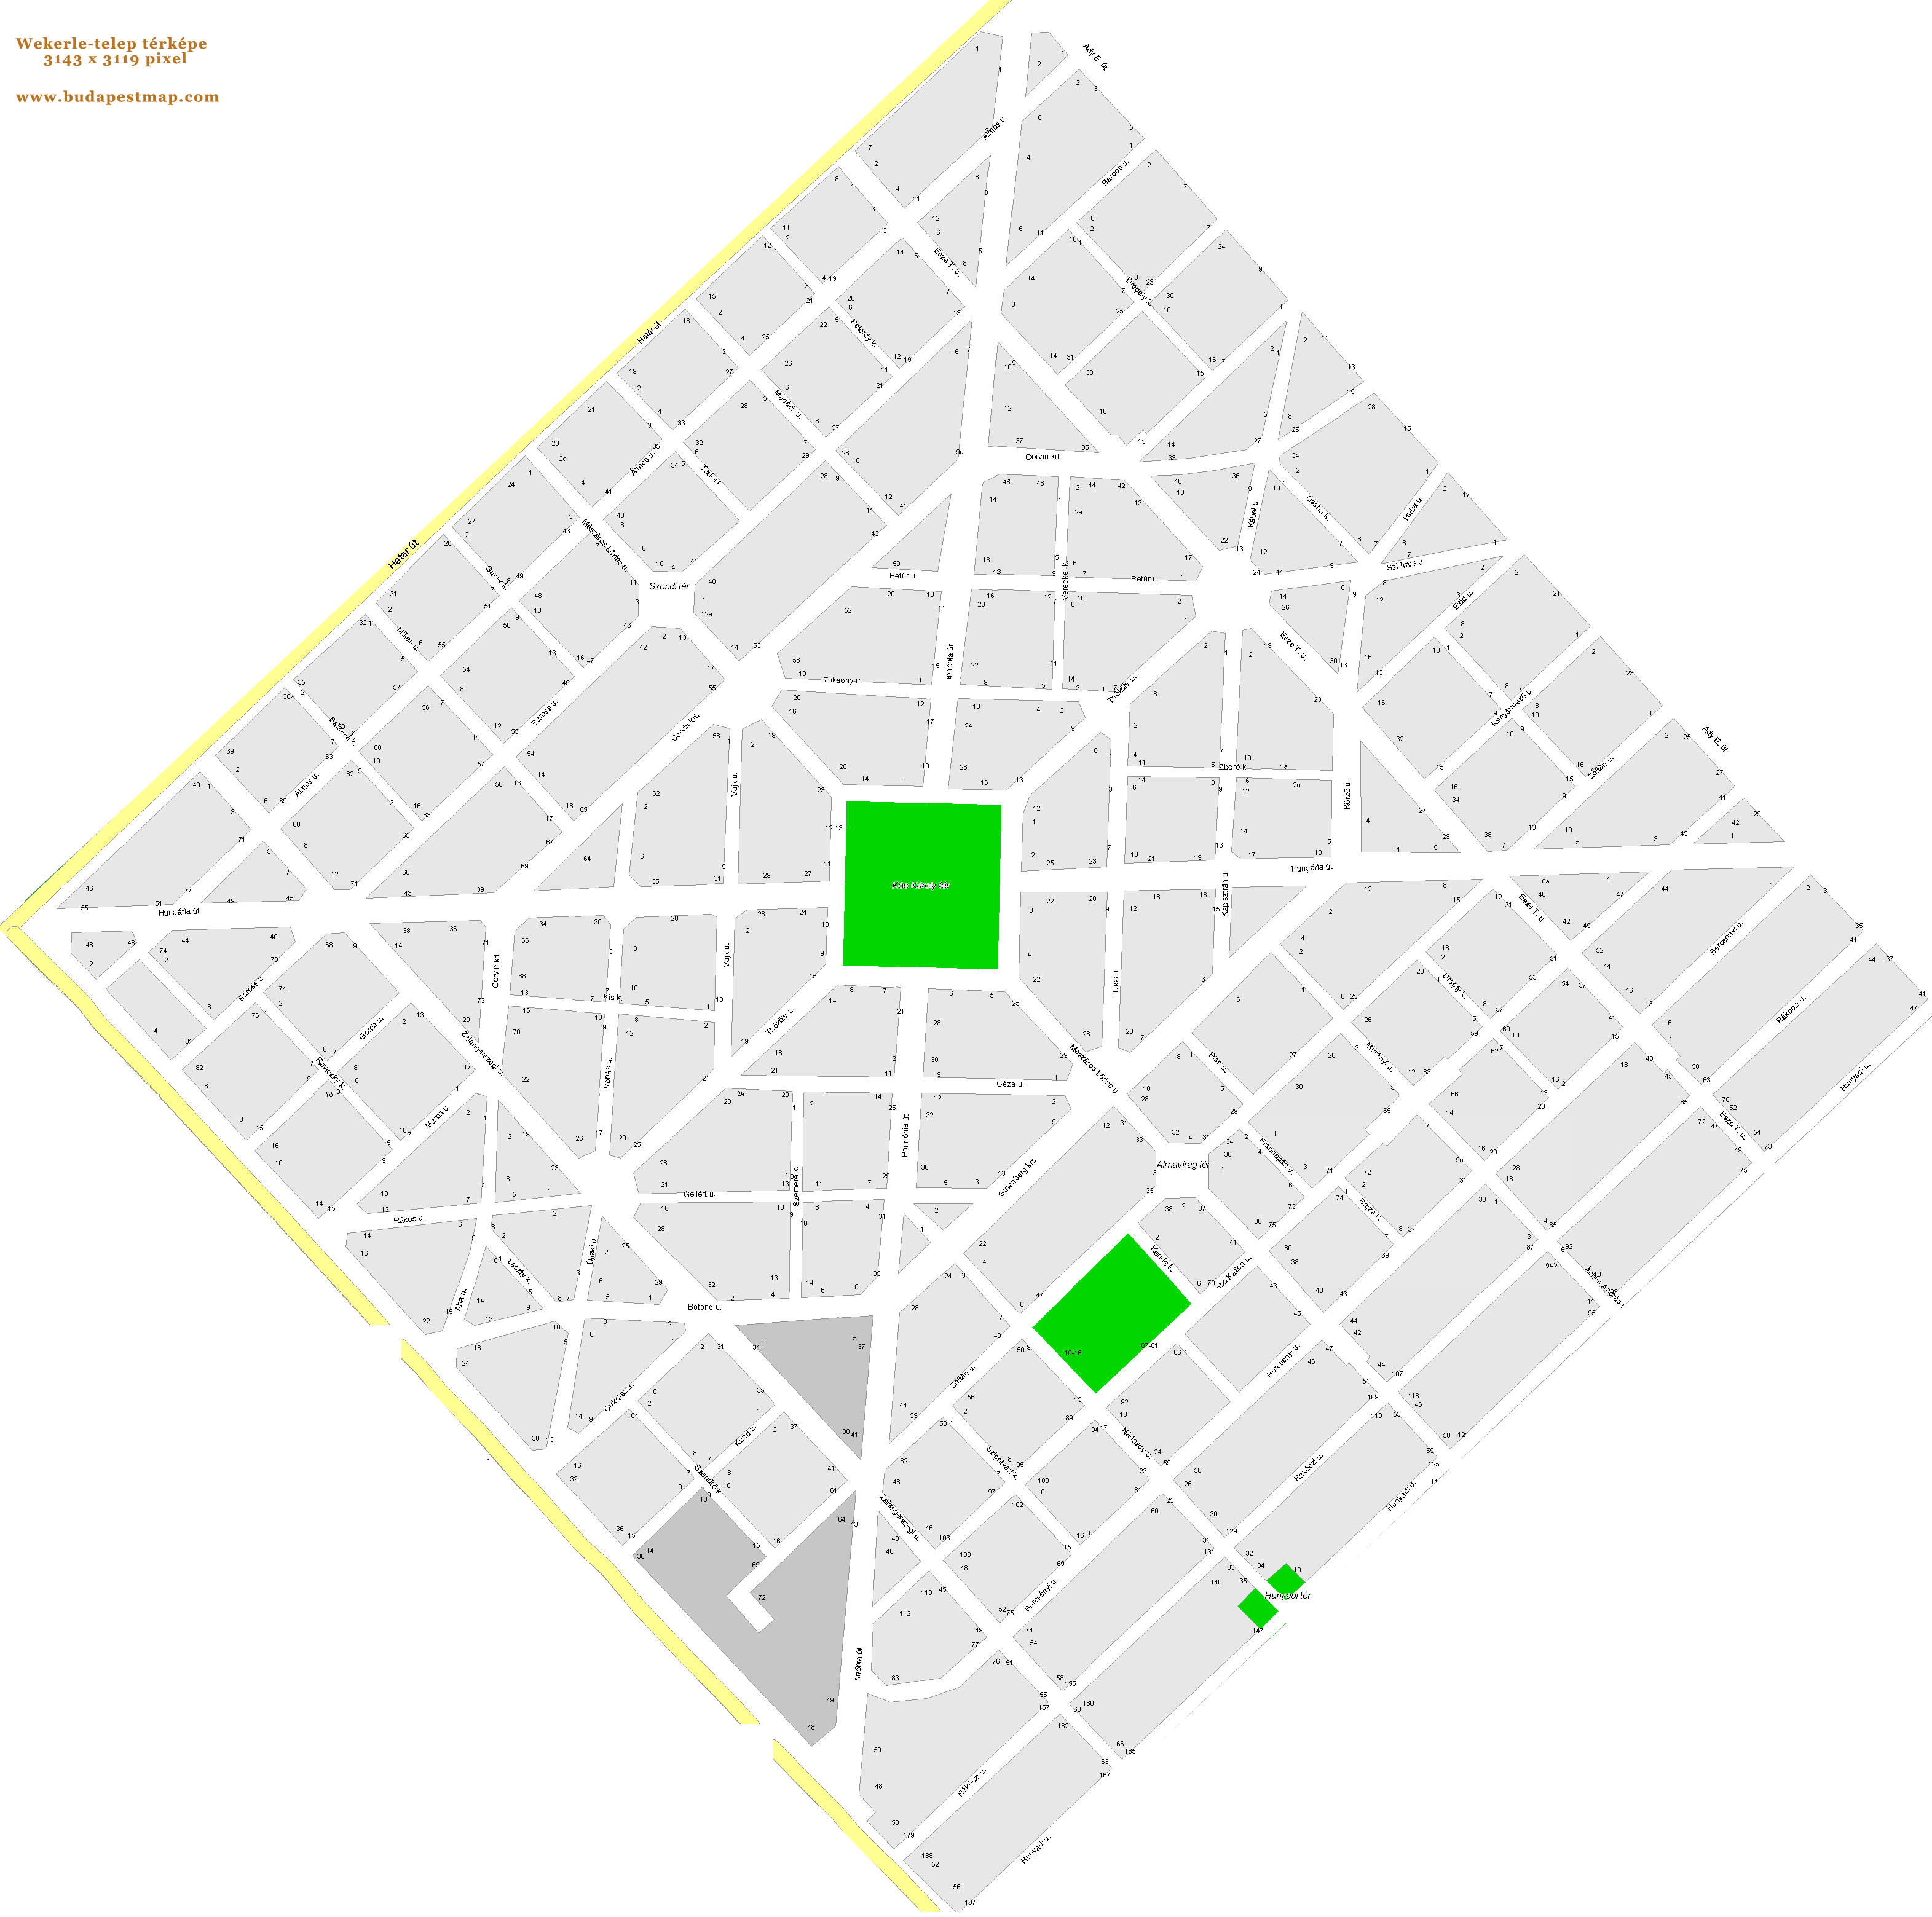 budapest térkép házszámokkal Wekerle telep térképe házszámokkal .  térképek, map, maps  budapest térkép házszámokkal